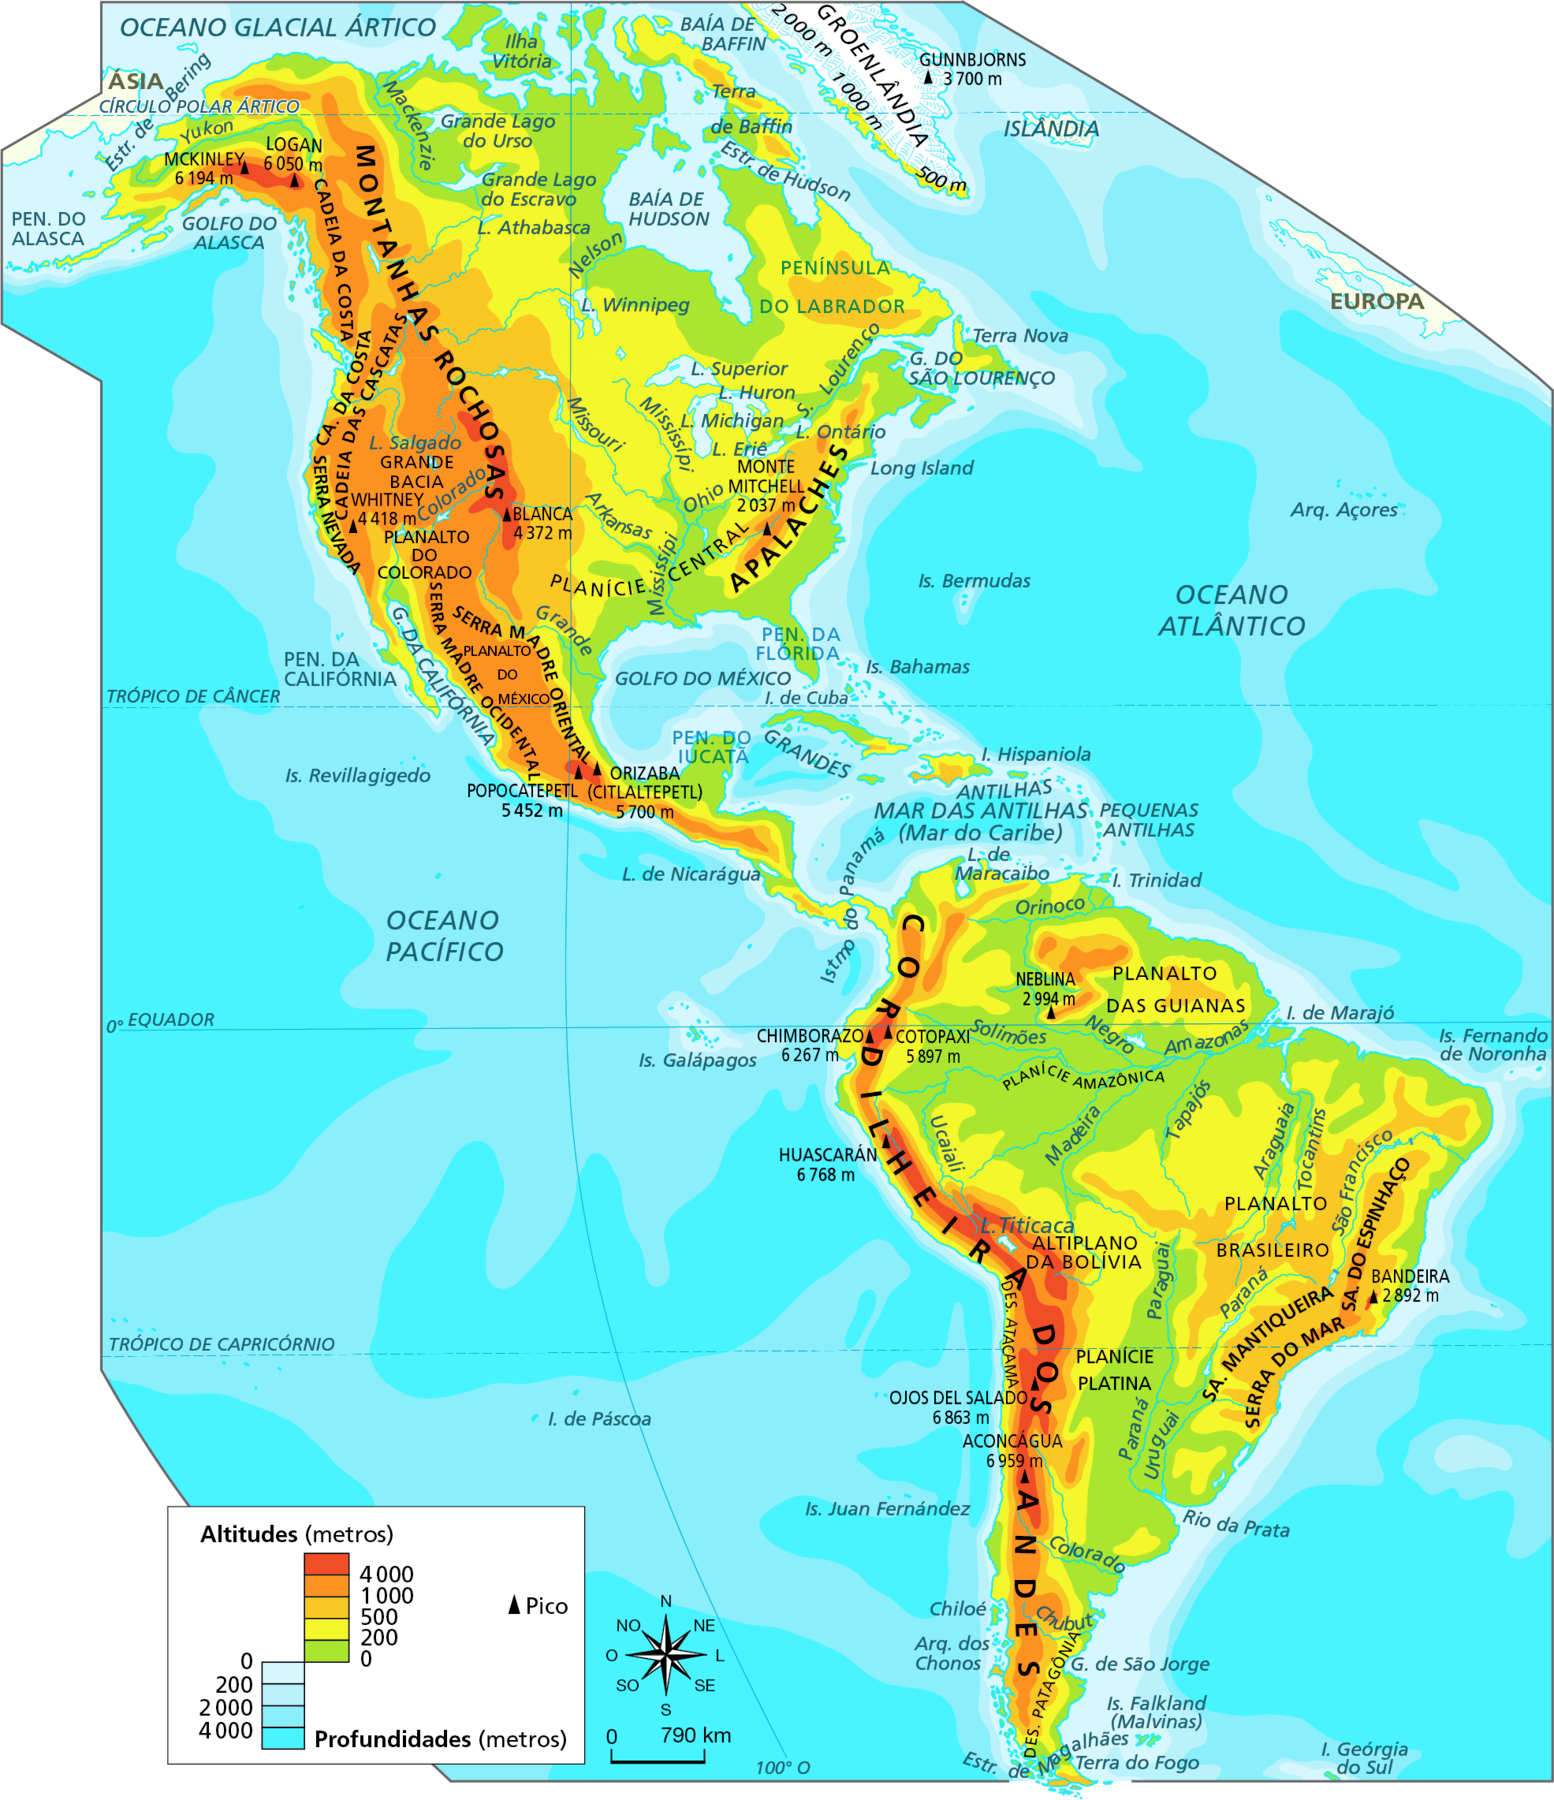 Mapa. América: físico. Mapa do continente americano com a indicação das faixas de altitude e das principais unidades de relevo.    Acima de 4.000 metros, em marrom:  extremo norte da América do Norte, próximo à costa oeste, com os picos Mckinley, 6.194 metros, e Logan, 6.050 metros. Também pequena faixa das Montanhas Rochosas na porção centro-oeste dos Estados Unidos, com o Pico Blanca, de 4.372 metros; em pequeno trecho no sul do México e na maior parte da Cordilheira dos Andes, localizada próxima a toda a costa oeste da América do Sul. No sul do México existem os picos Popocatepetl, com 5.452 metros, e Orizaba, com 5.700 metros; na Cordilheira dos Andes, os picos Chimborazo, com 6.267 metros, Cotopaxi, 5.897 metros, Huascarán, 6.768 metros, Ojos del Salado, 6.863 metros e Aconcágua, 6.959 metros.  De 1.000 a 4.000 metros de altitude: toda a porção da costa oeste da América do Norte. As unidades de relevo dessa área são Montanhas Rochosas, Cadeia da Costa, Cadeia das Cascatas, Serra Nevada, Serra Madre Oriental, Serra Madre Ocidental, Planalto do Colorado, Planalto do México. Na costa leste dos Estados Unidos, há os Montes Apalaches, onde se encontra o Monte Mitchell, com 2.037 metros. Na América do Sul, altitudes entre 4.000 e  1.000 metros estão na Cordilheira dos Andes, na costa oeste; em parte da Serra do Espinhaço e da Serra do Mar na porção leste e sudeste do Brasil e faixa no norte da América do Sul, onde está o Pico da Neblina, com 2.994 metros.  De 1.000 a 500 metros de altitude: porção centro-oeste e Península do Labrador da América do Norte; parte da América Central; porção norte da América do Sul (Planalto das Guianas), franja da Cordilheira dos Andes e porção central, sudeste e parte do Nordeste do Brasil, onde está o Planalto Brasileiro, a Serra da Mantiqueira, a Serra do Mar e a Serra do Espinhaço.   De 500 a 200 metros de altitude: faixa central no sentido norte-sul e em parte do Nordeste da América do Norte e, na América do Sul, contornando as áreas de planalto e a Cordilheira dos Andes.  De 200 a 0 metros de altitude: na costa nordeste e norte e em parte da porção central da América do Sul, onde está a Planície Amazônica e a Planície Platina, que se estende até o sul do continente. Na América Central, em Cuba e na costa leste. Na América do Norte, em toda a costa leste, como na Península de Iucatã, na Península da Flórida e na Ilha Vitória, no extremo norte do continente.  Entre zero e menos 4.000 metros: profundidade nos oceanos Pacífico e Atlântico aumenta à medida que se afasta do continente americano.  Abaixo, rosa dos ventos e escala de 0 a 790 quilômetros.